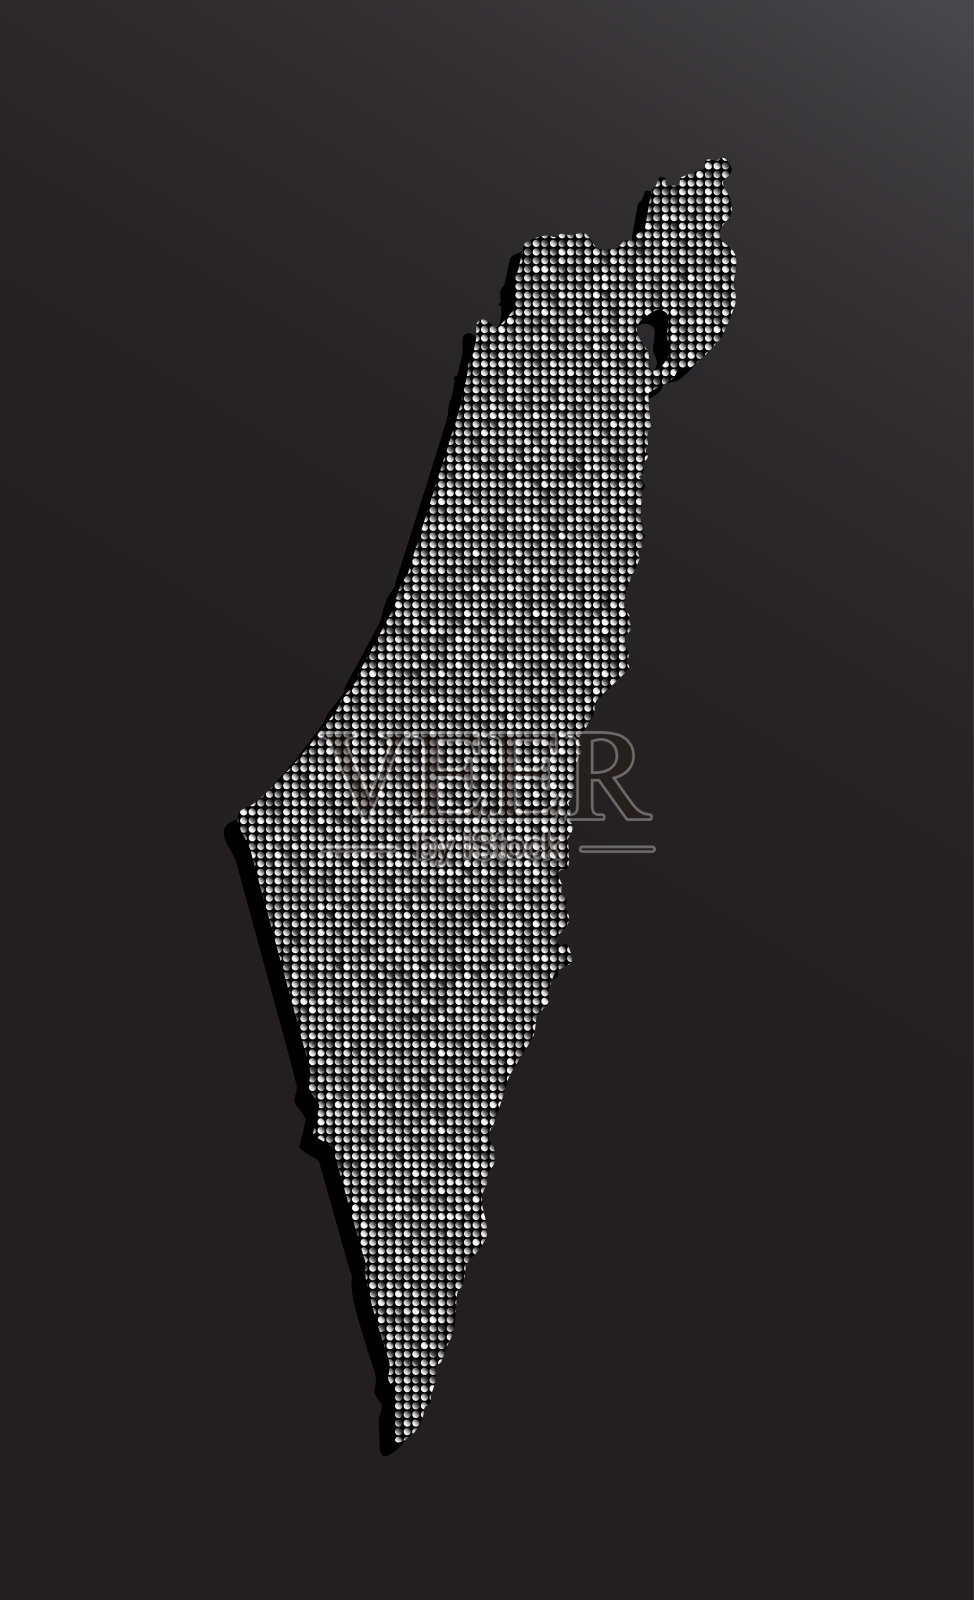 以色列国家地图与银色亮片向量插画图片素材